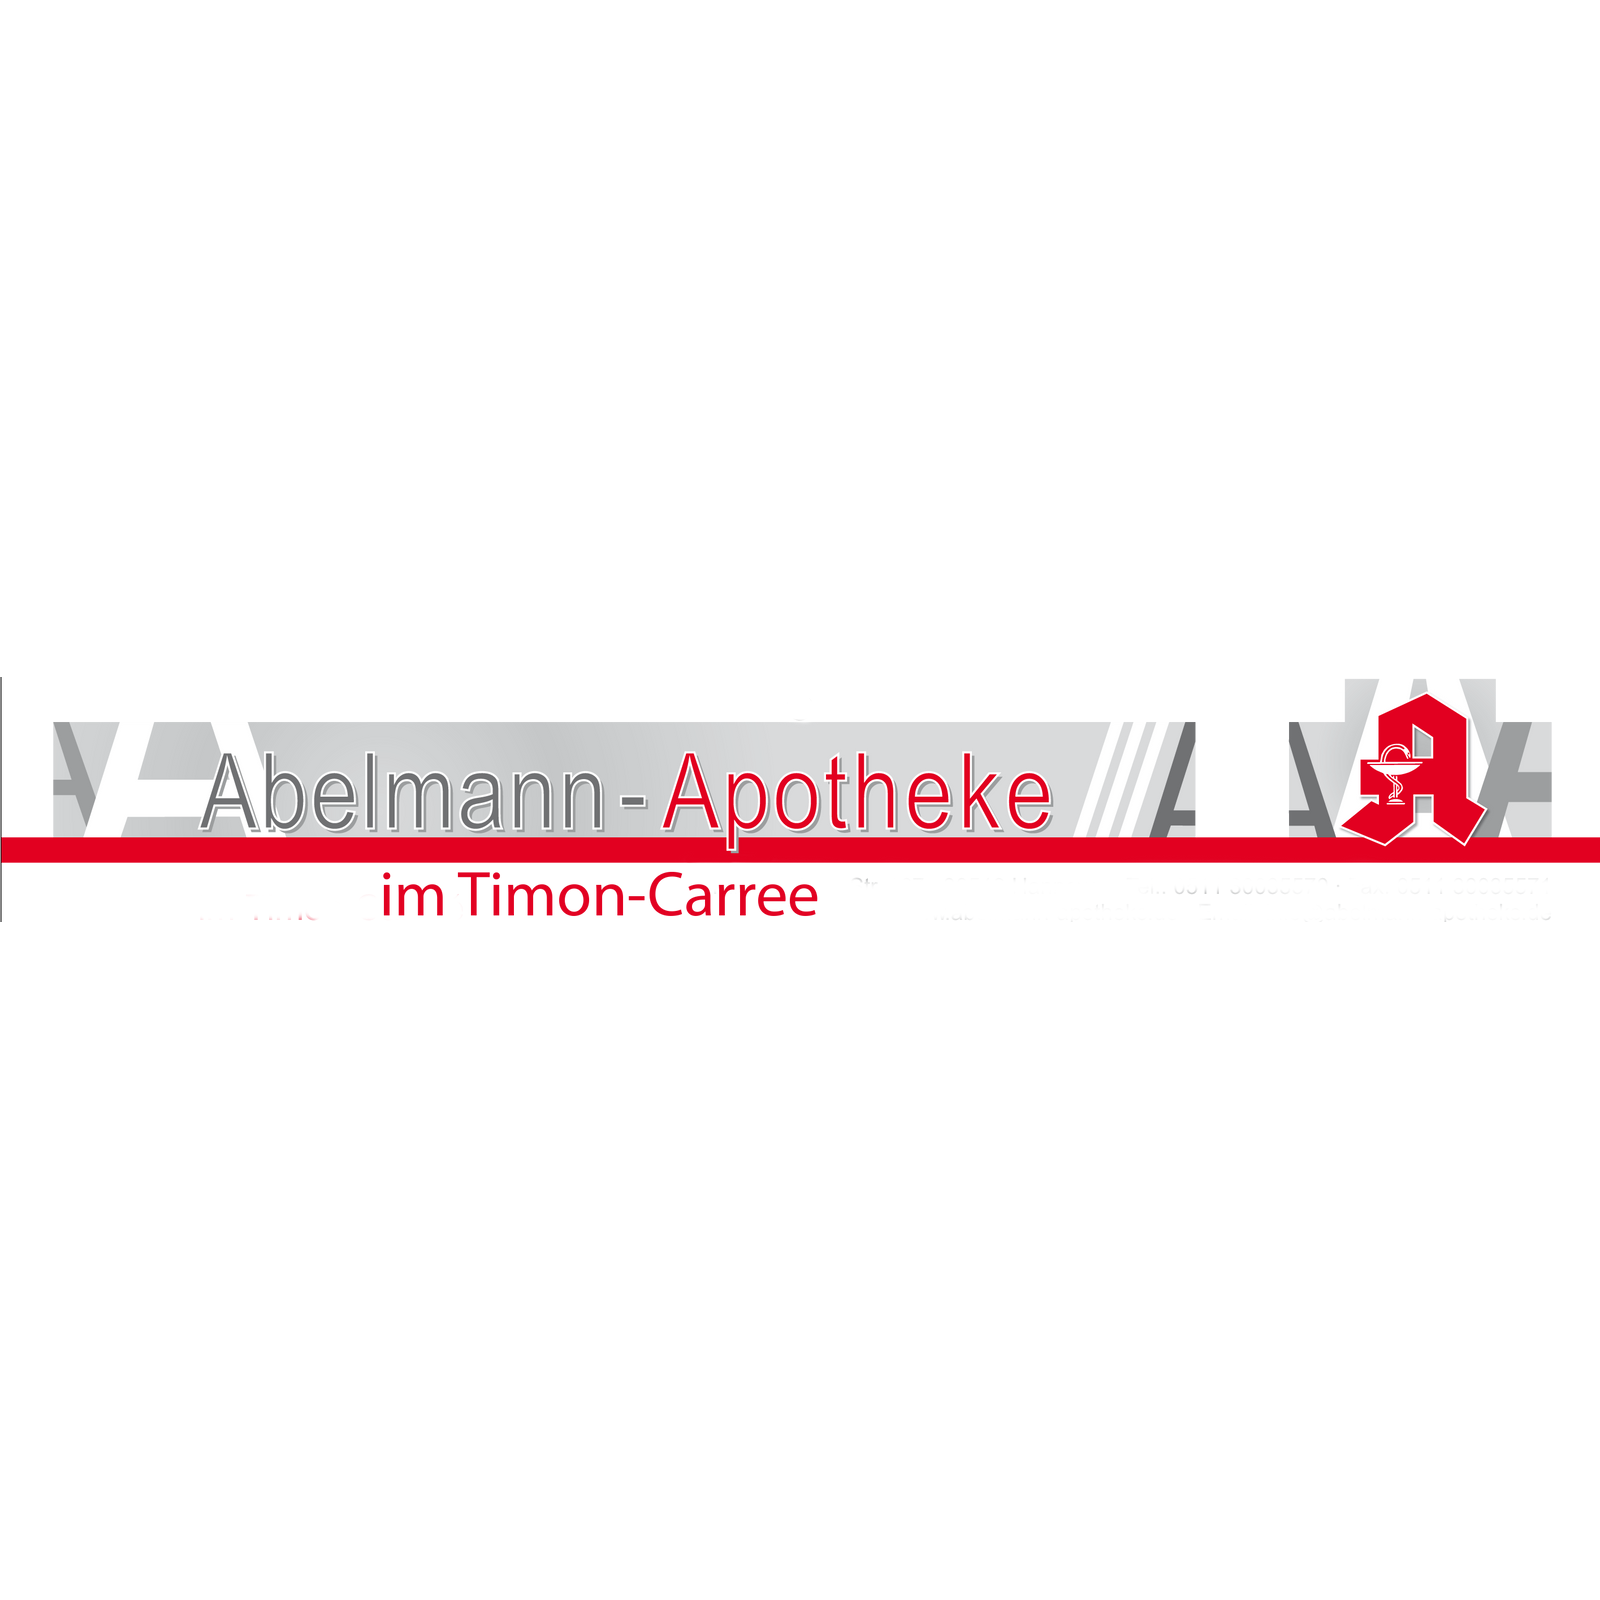 Abelmann-Apotheke im Timon-Carrée Logo